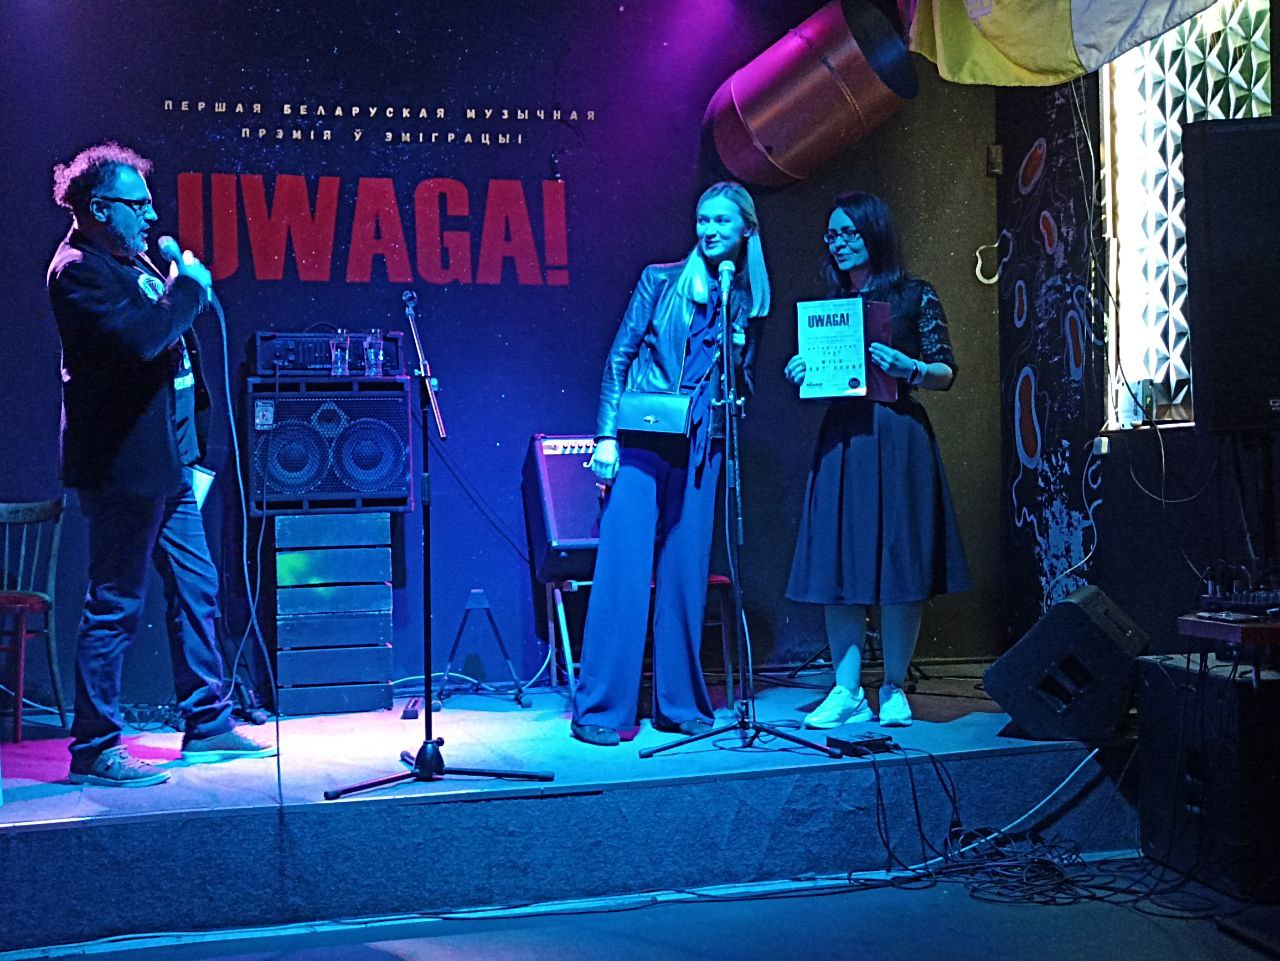 У Варшаве адбылося ўручэнне першай беларускай музычнай прэміі ў эміграцыі «Uwaga!» - фотафакт